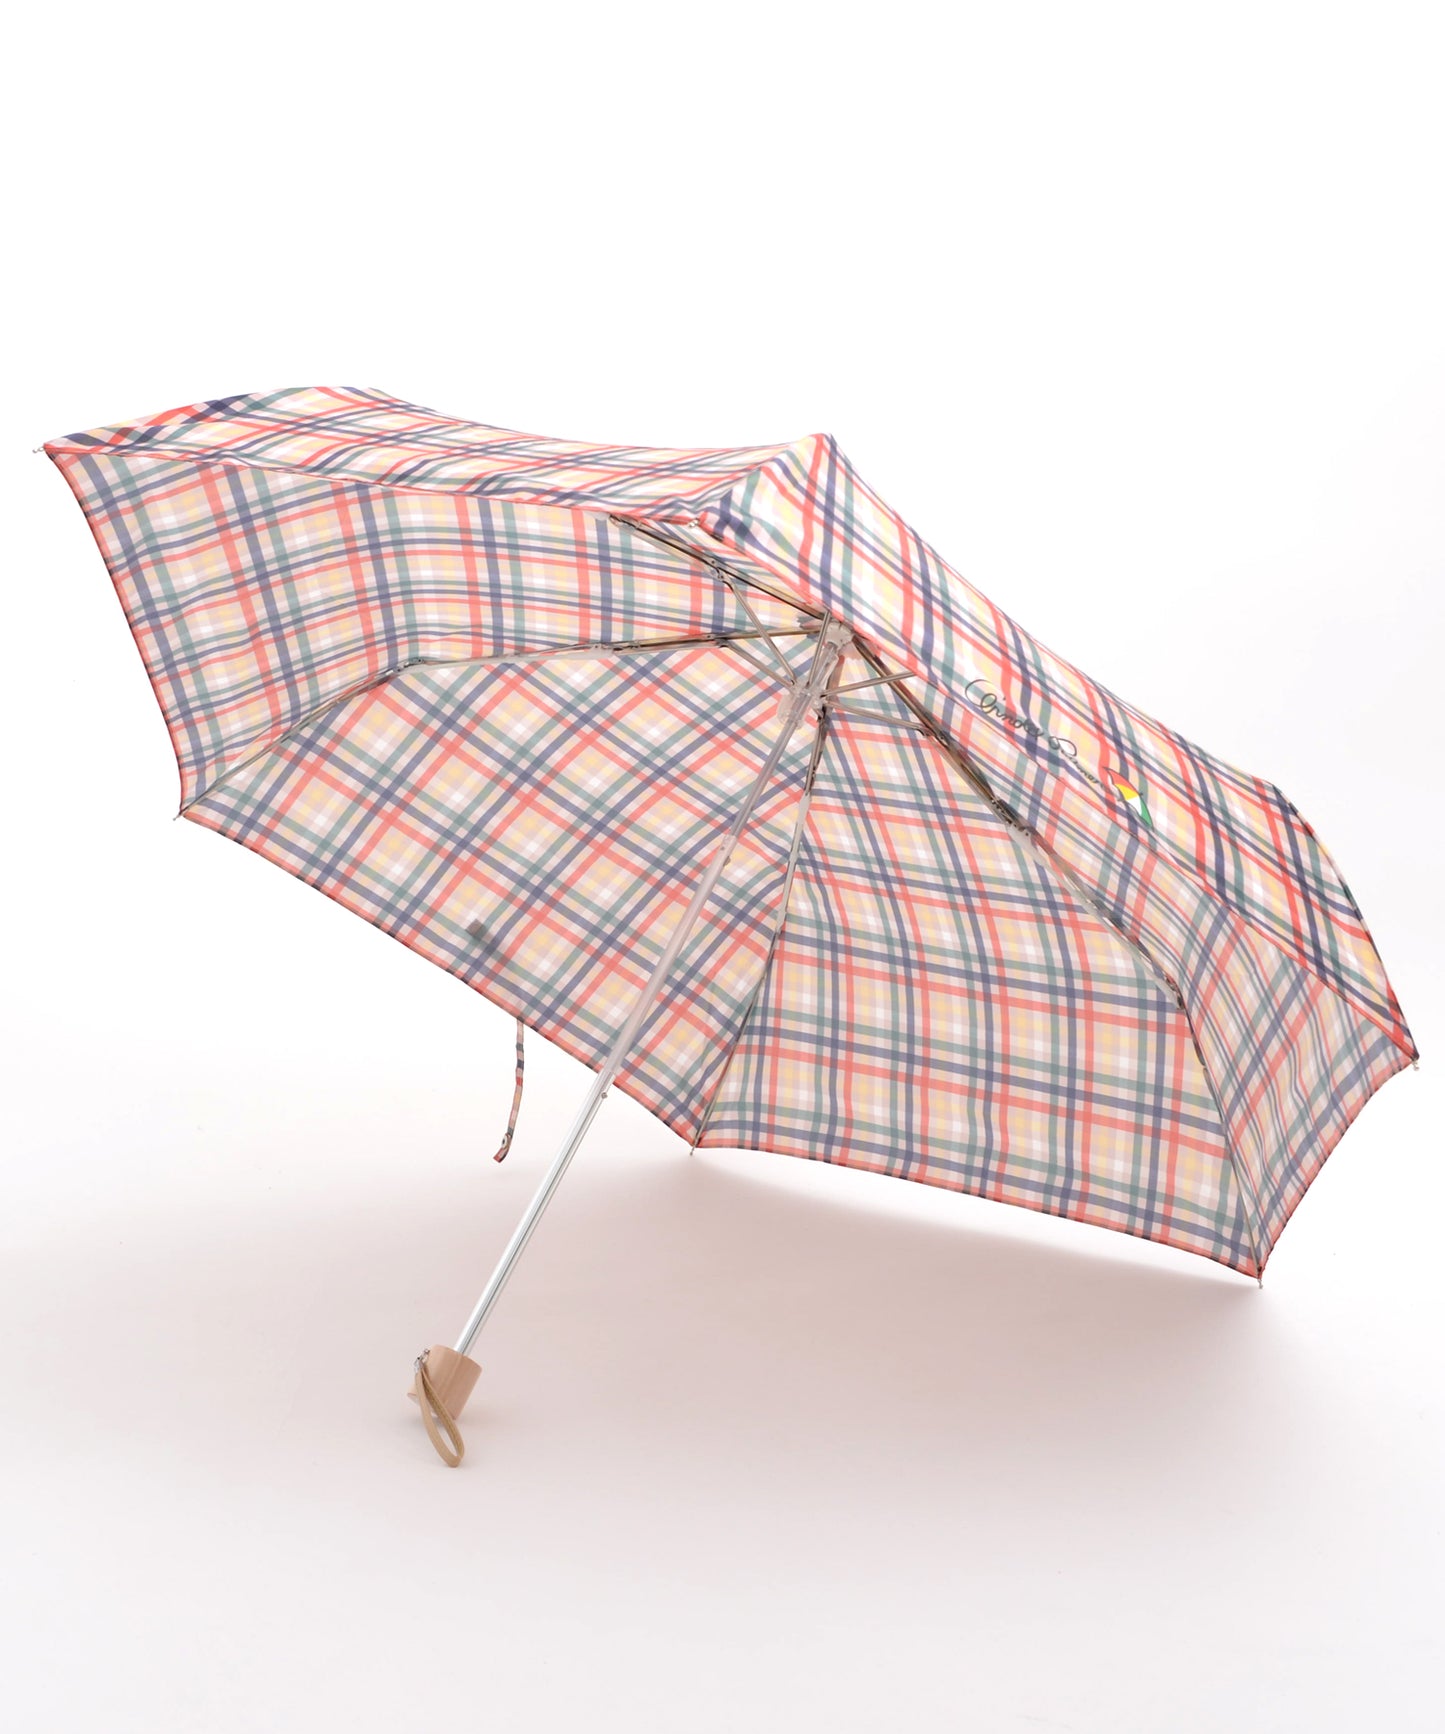 パーマーチェック晴雨兼用シェア折り畳み傘